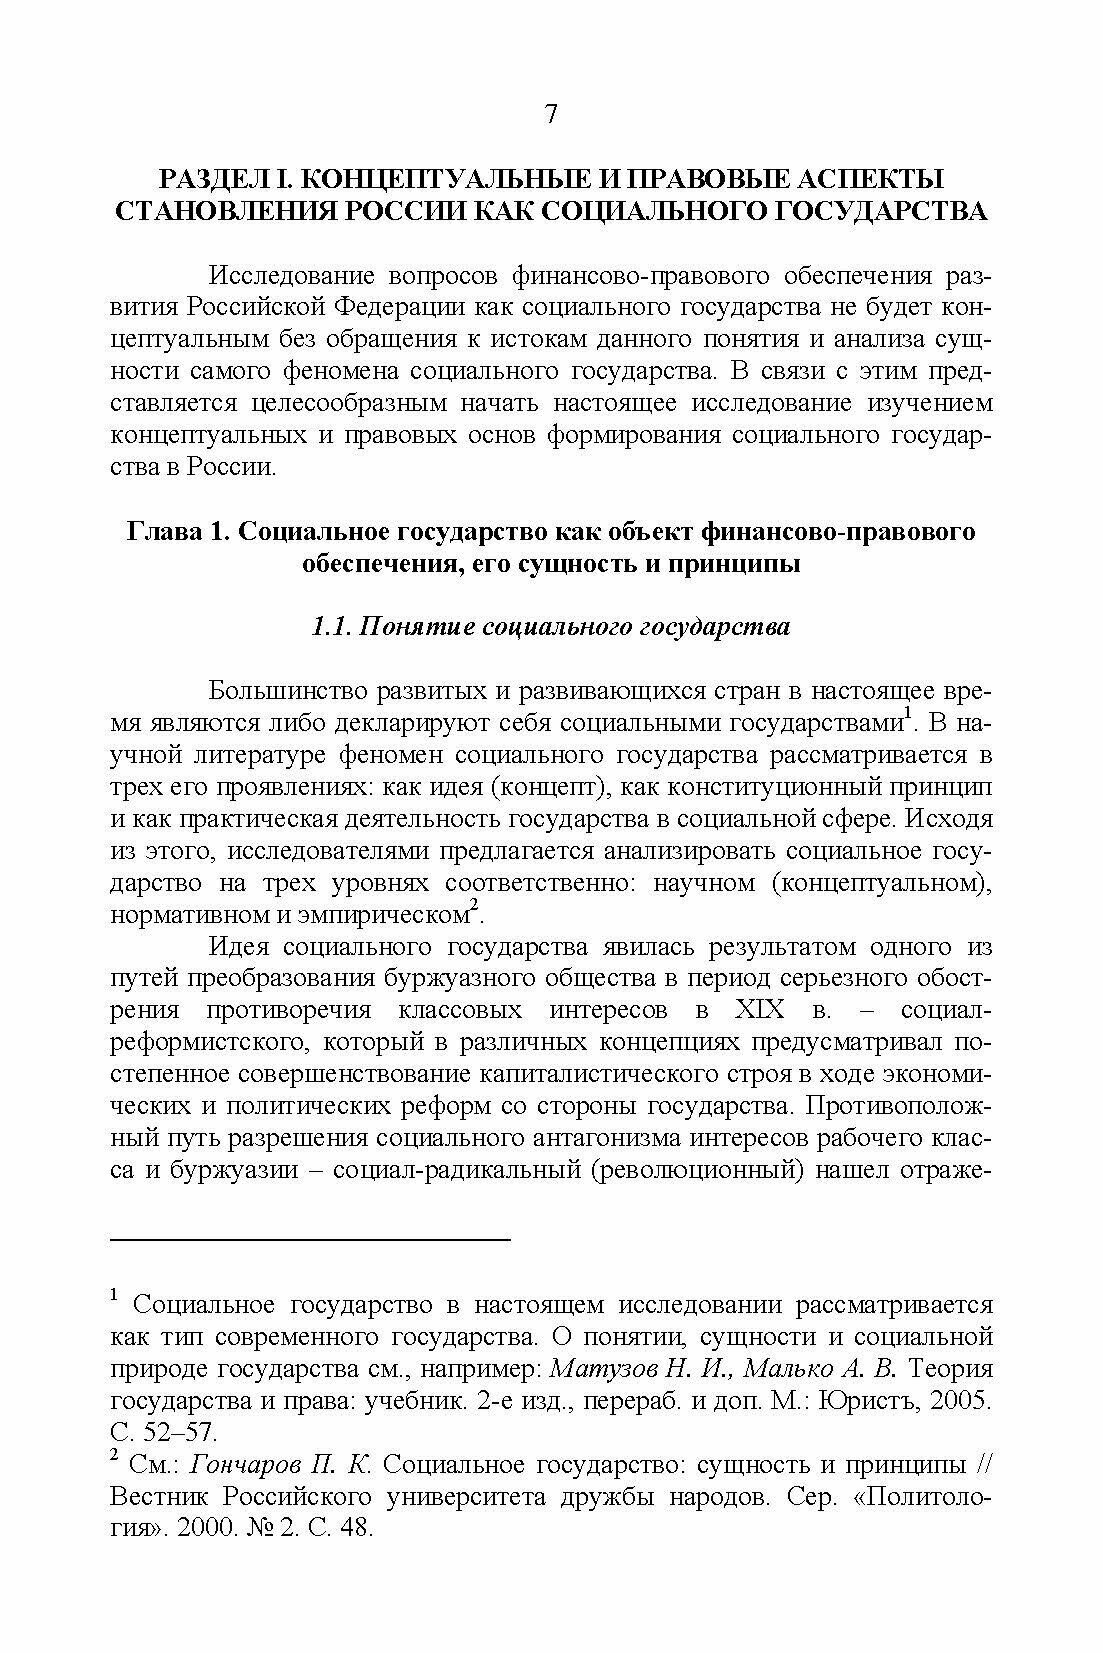 Развитие социального государства в России. Финансово-правовые аспекты - фото №6